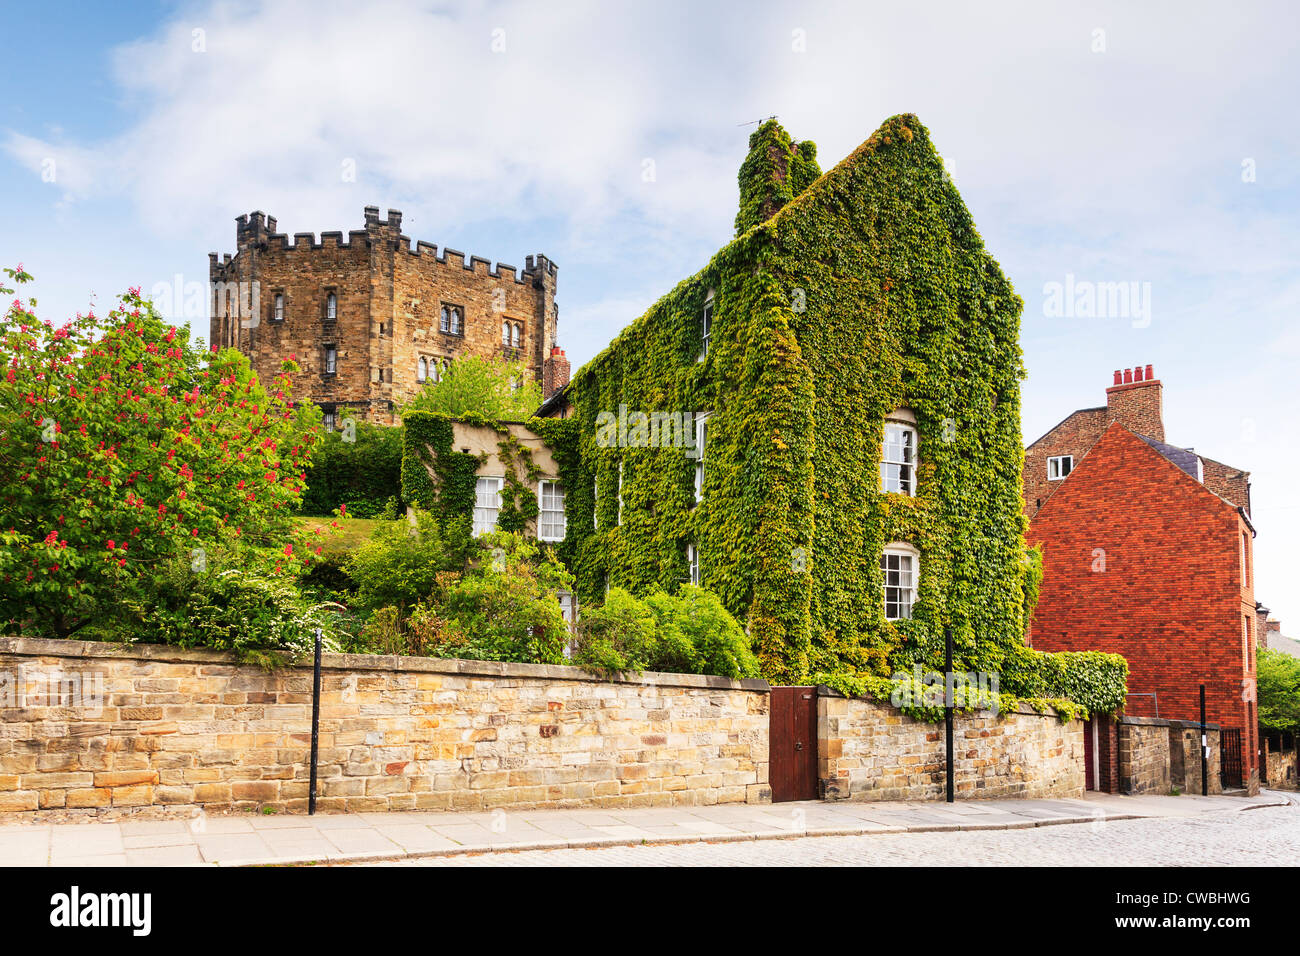 Une maison presque entièrement couverte de vigne vierge dans la cathédrale de Durham, à proximité du château de Durham et conserver. Banque D'Images